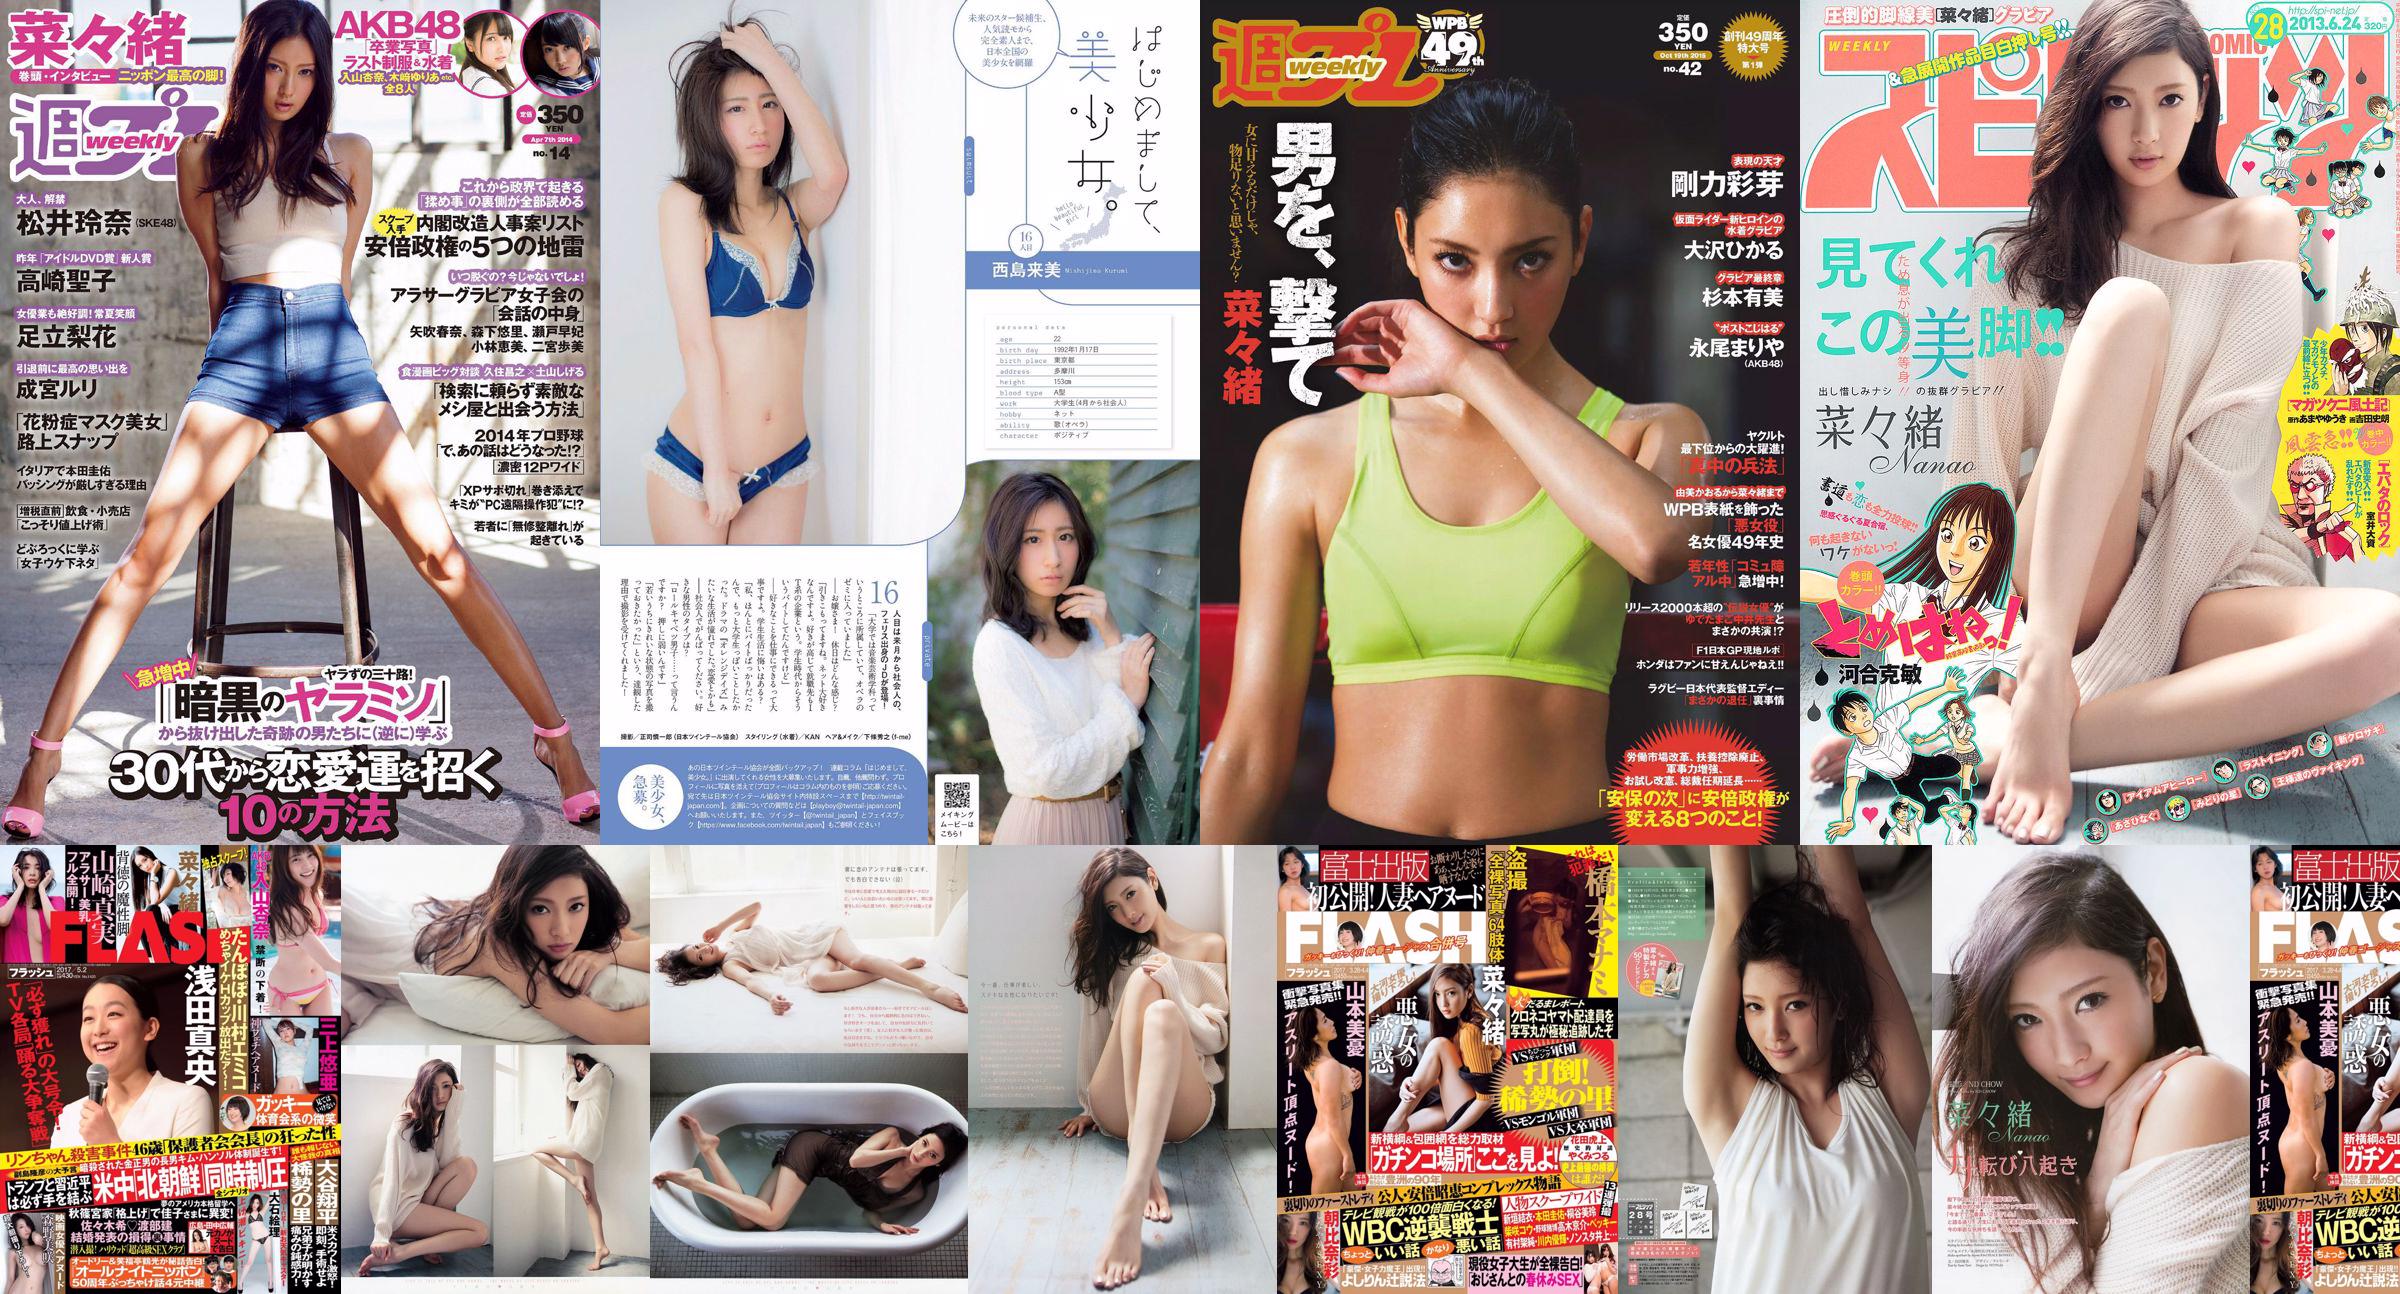 Nanao Yumi Sugimoto Hikaru Ohsawa Ayame Goriki Riona Nagao Mariya Nagao [Weekly Playboy] 2015 No.42 Photograph No.1c9358 Page 1